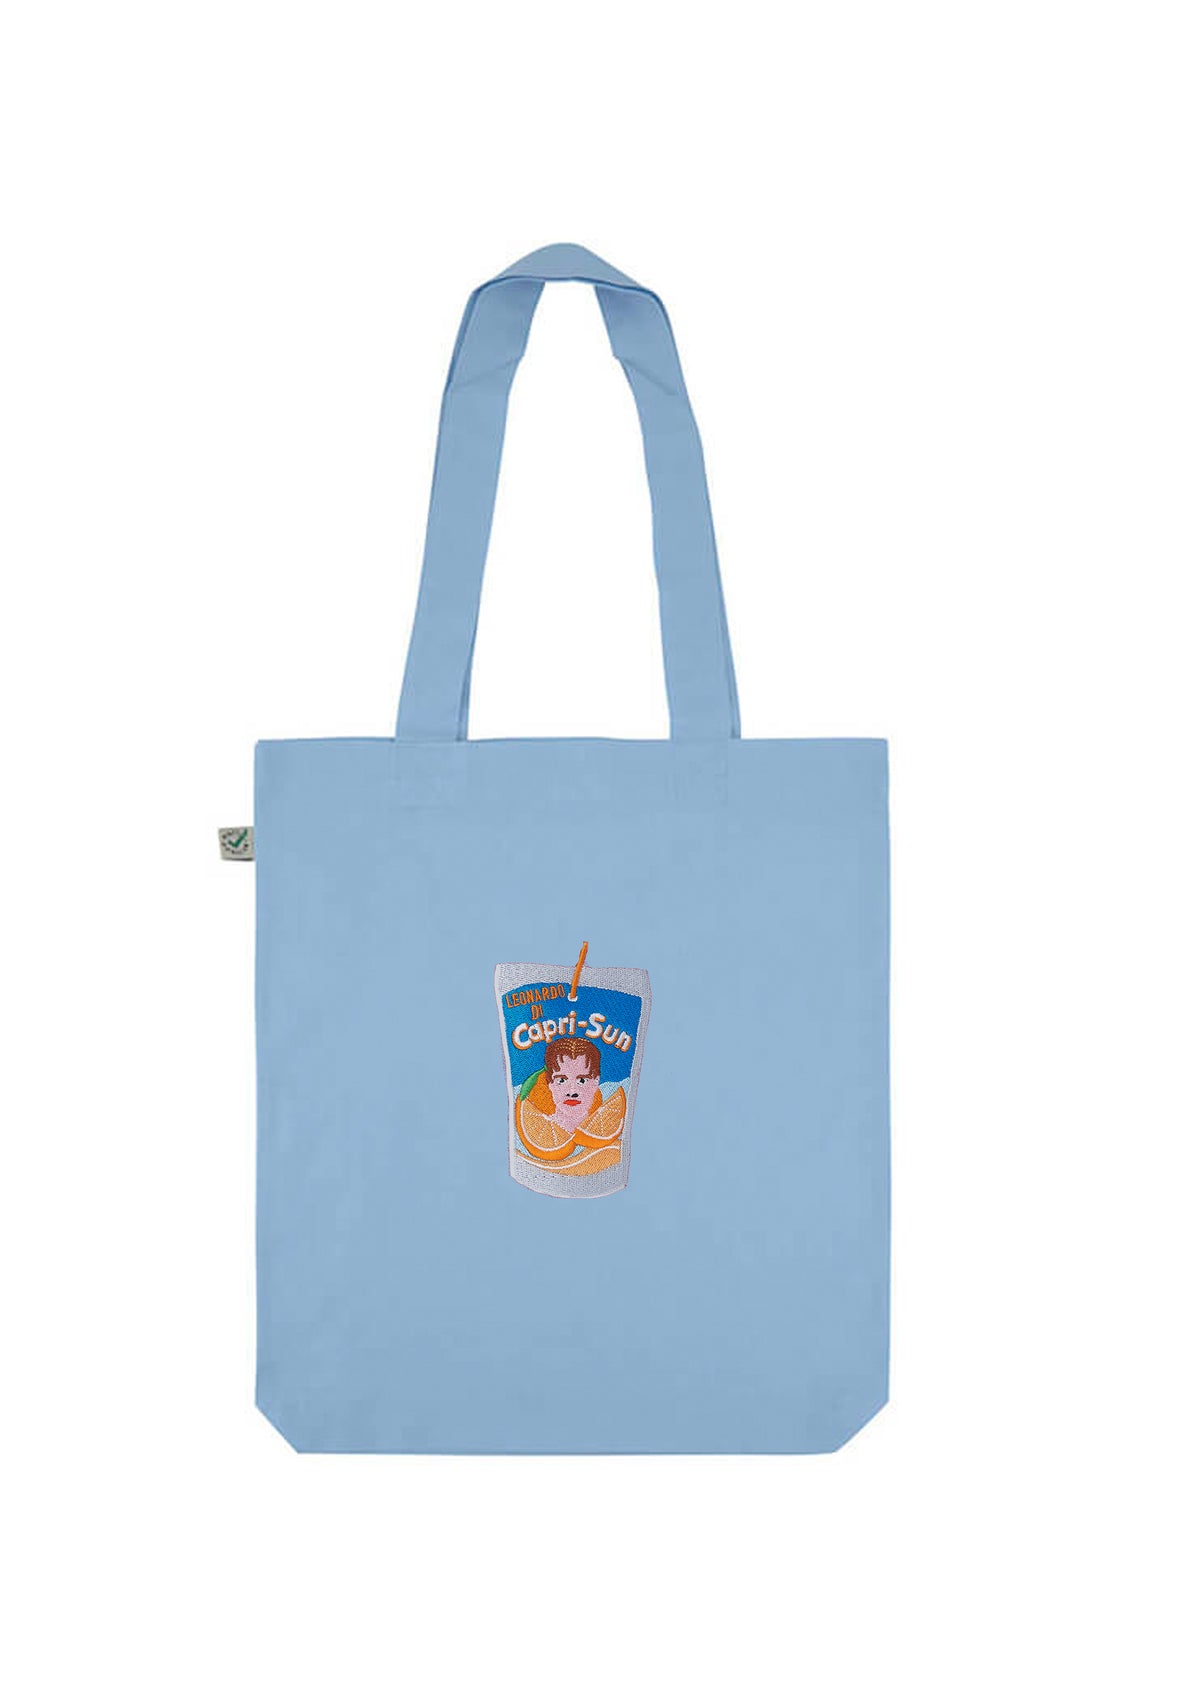 Leonardo DiCapriSun Embroidered Tote Bag